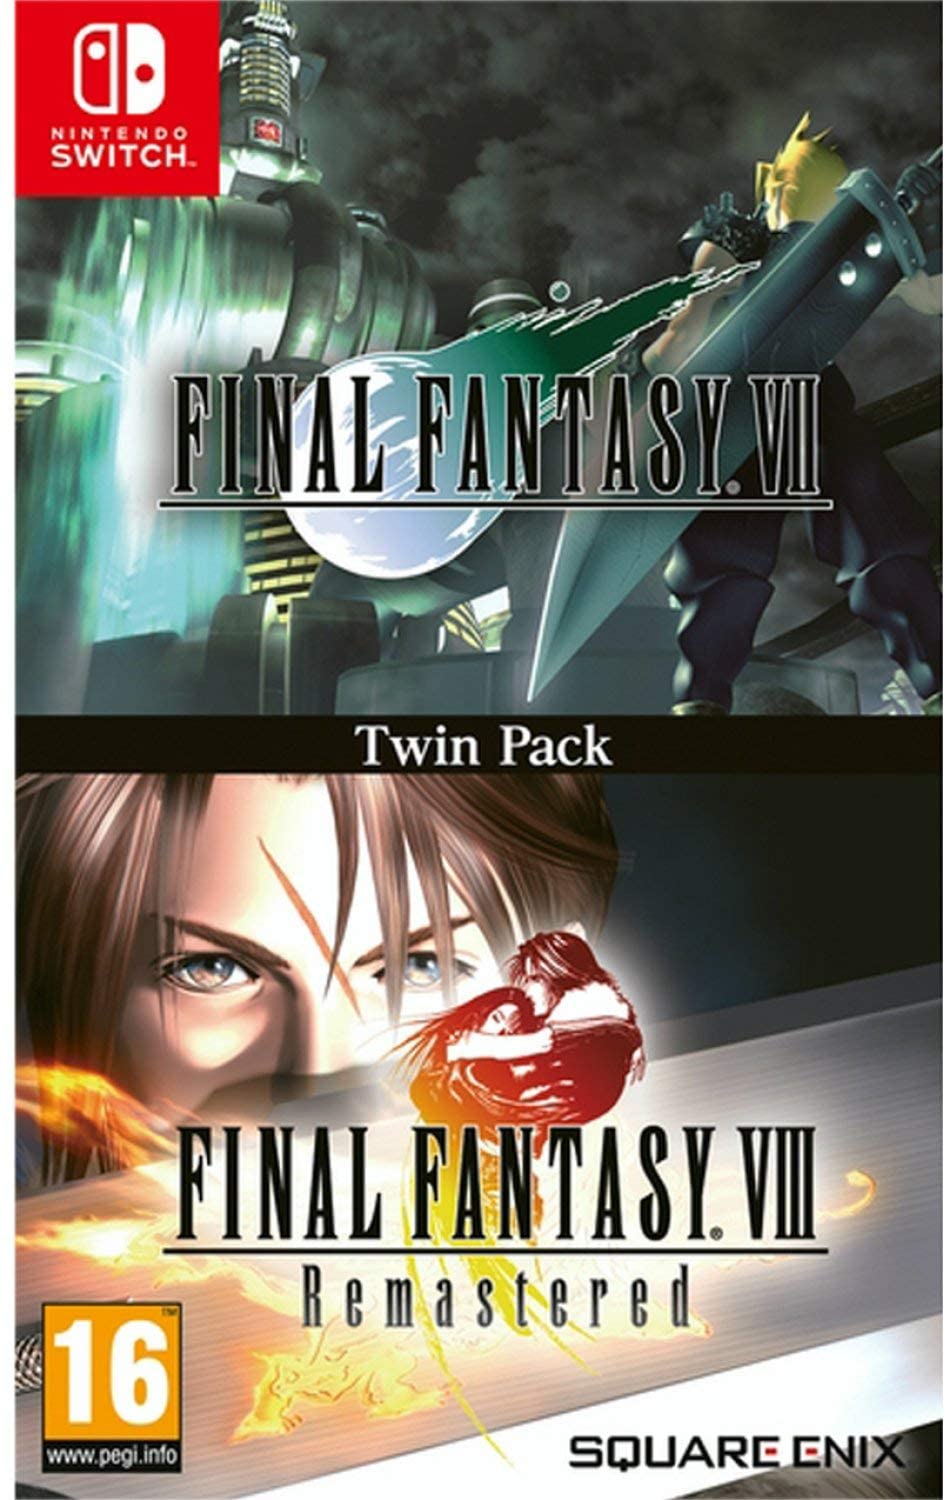 超美品 最高品質の RPG Final Fantasy VII VIII Remastered Twin Pack ファイナルファンタジー 7 8 リマスター ツインパック Nintendo switch ニンテンドー スイッチ ソフト版 日本語対応 輸入ver. jp.startup-dating.com jp.startup-dating.com